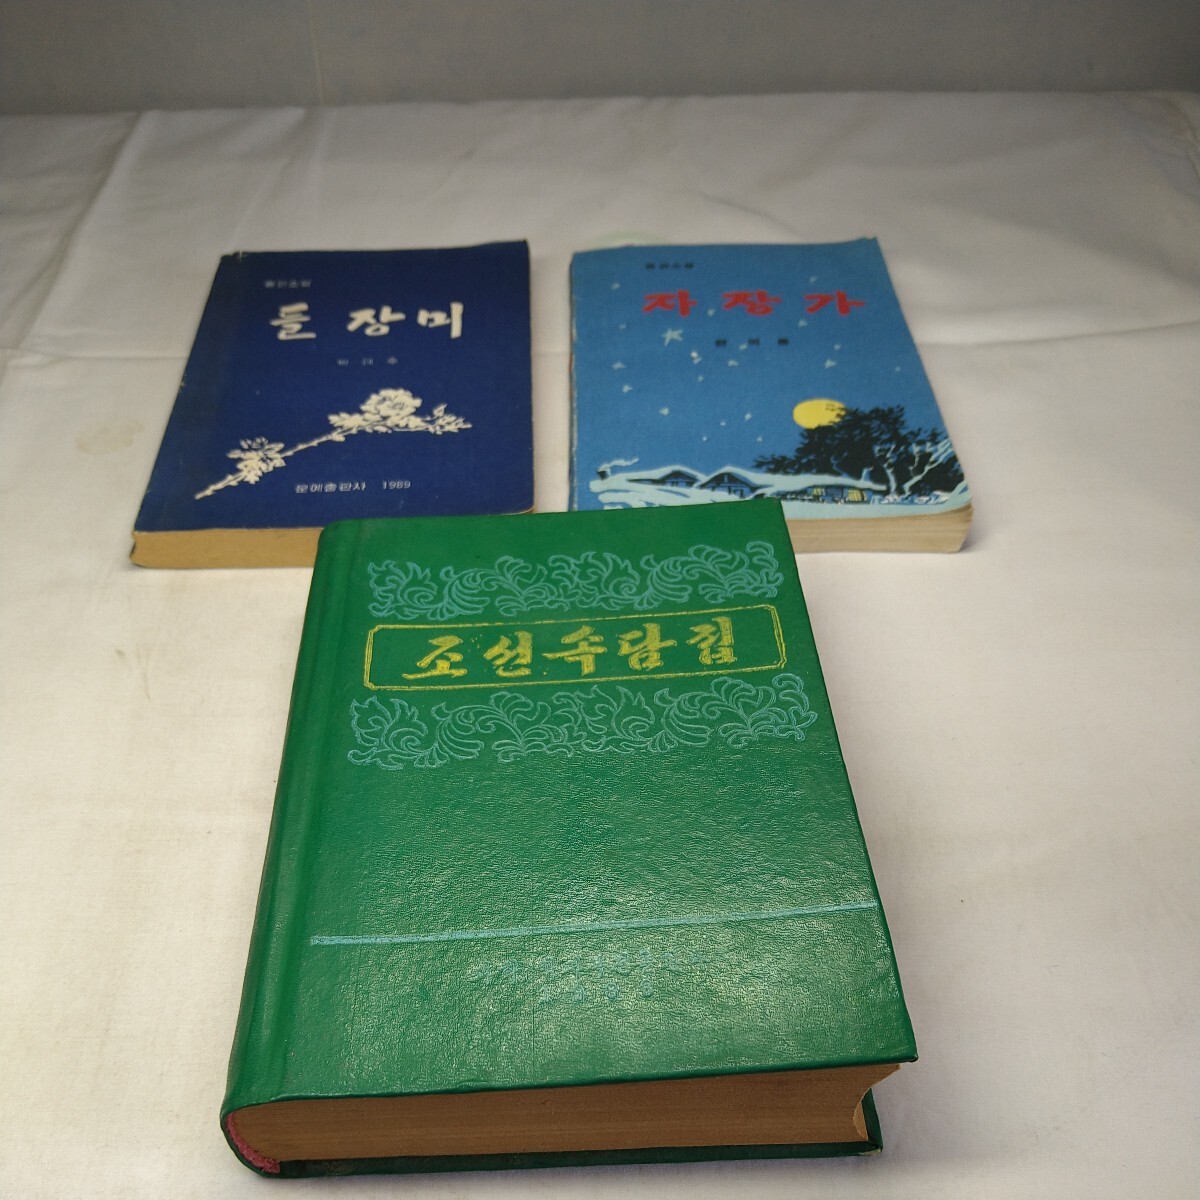 a-1468◆韓国 北朝鮮 書物 貴重 資料 ハングル 古書 外国書 線書きあり 中古本◆状態は画像で確認してください。の画像1